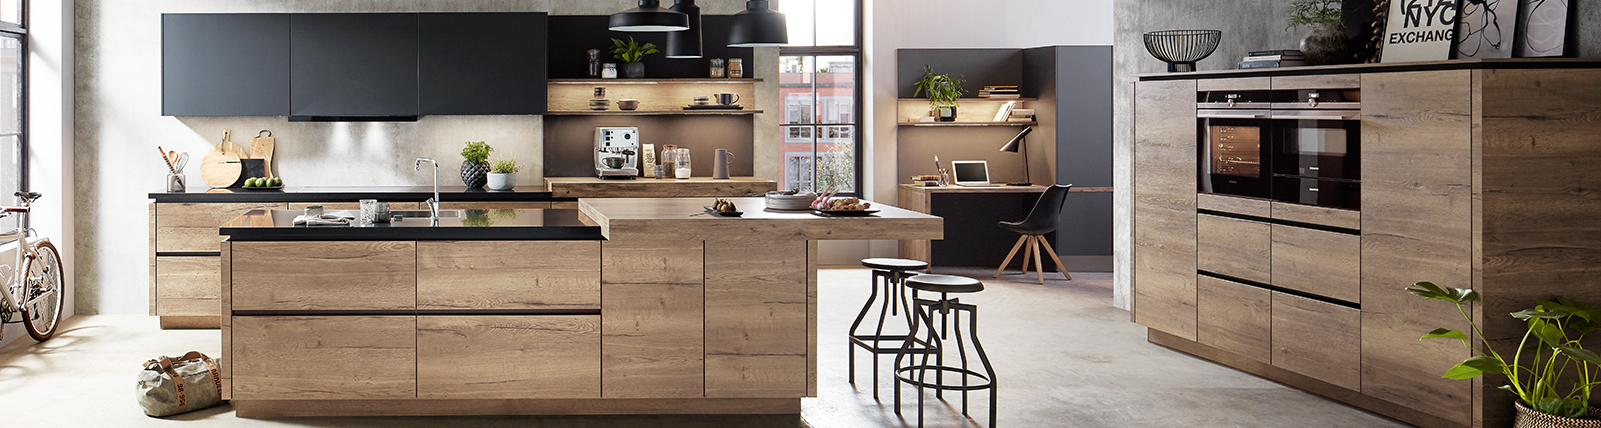 Cocina moderna con gabinetes de madera, isla, electrodomésticos de alta gama y una decoración urbana elegante en un espacio abierto y aireado.